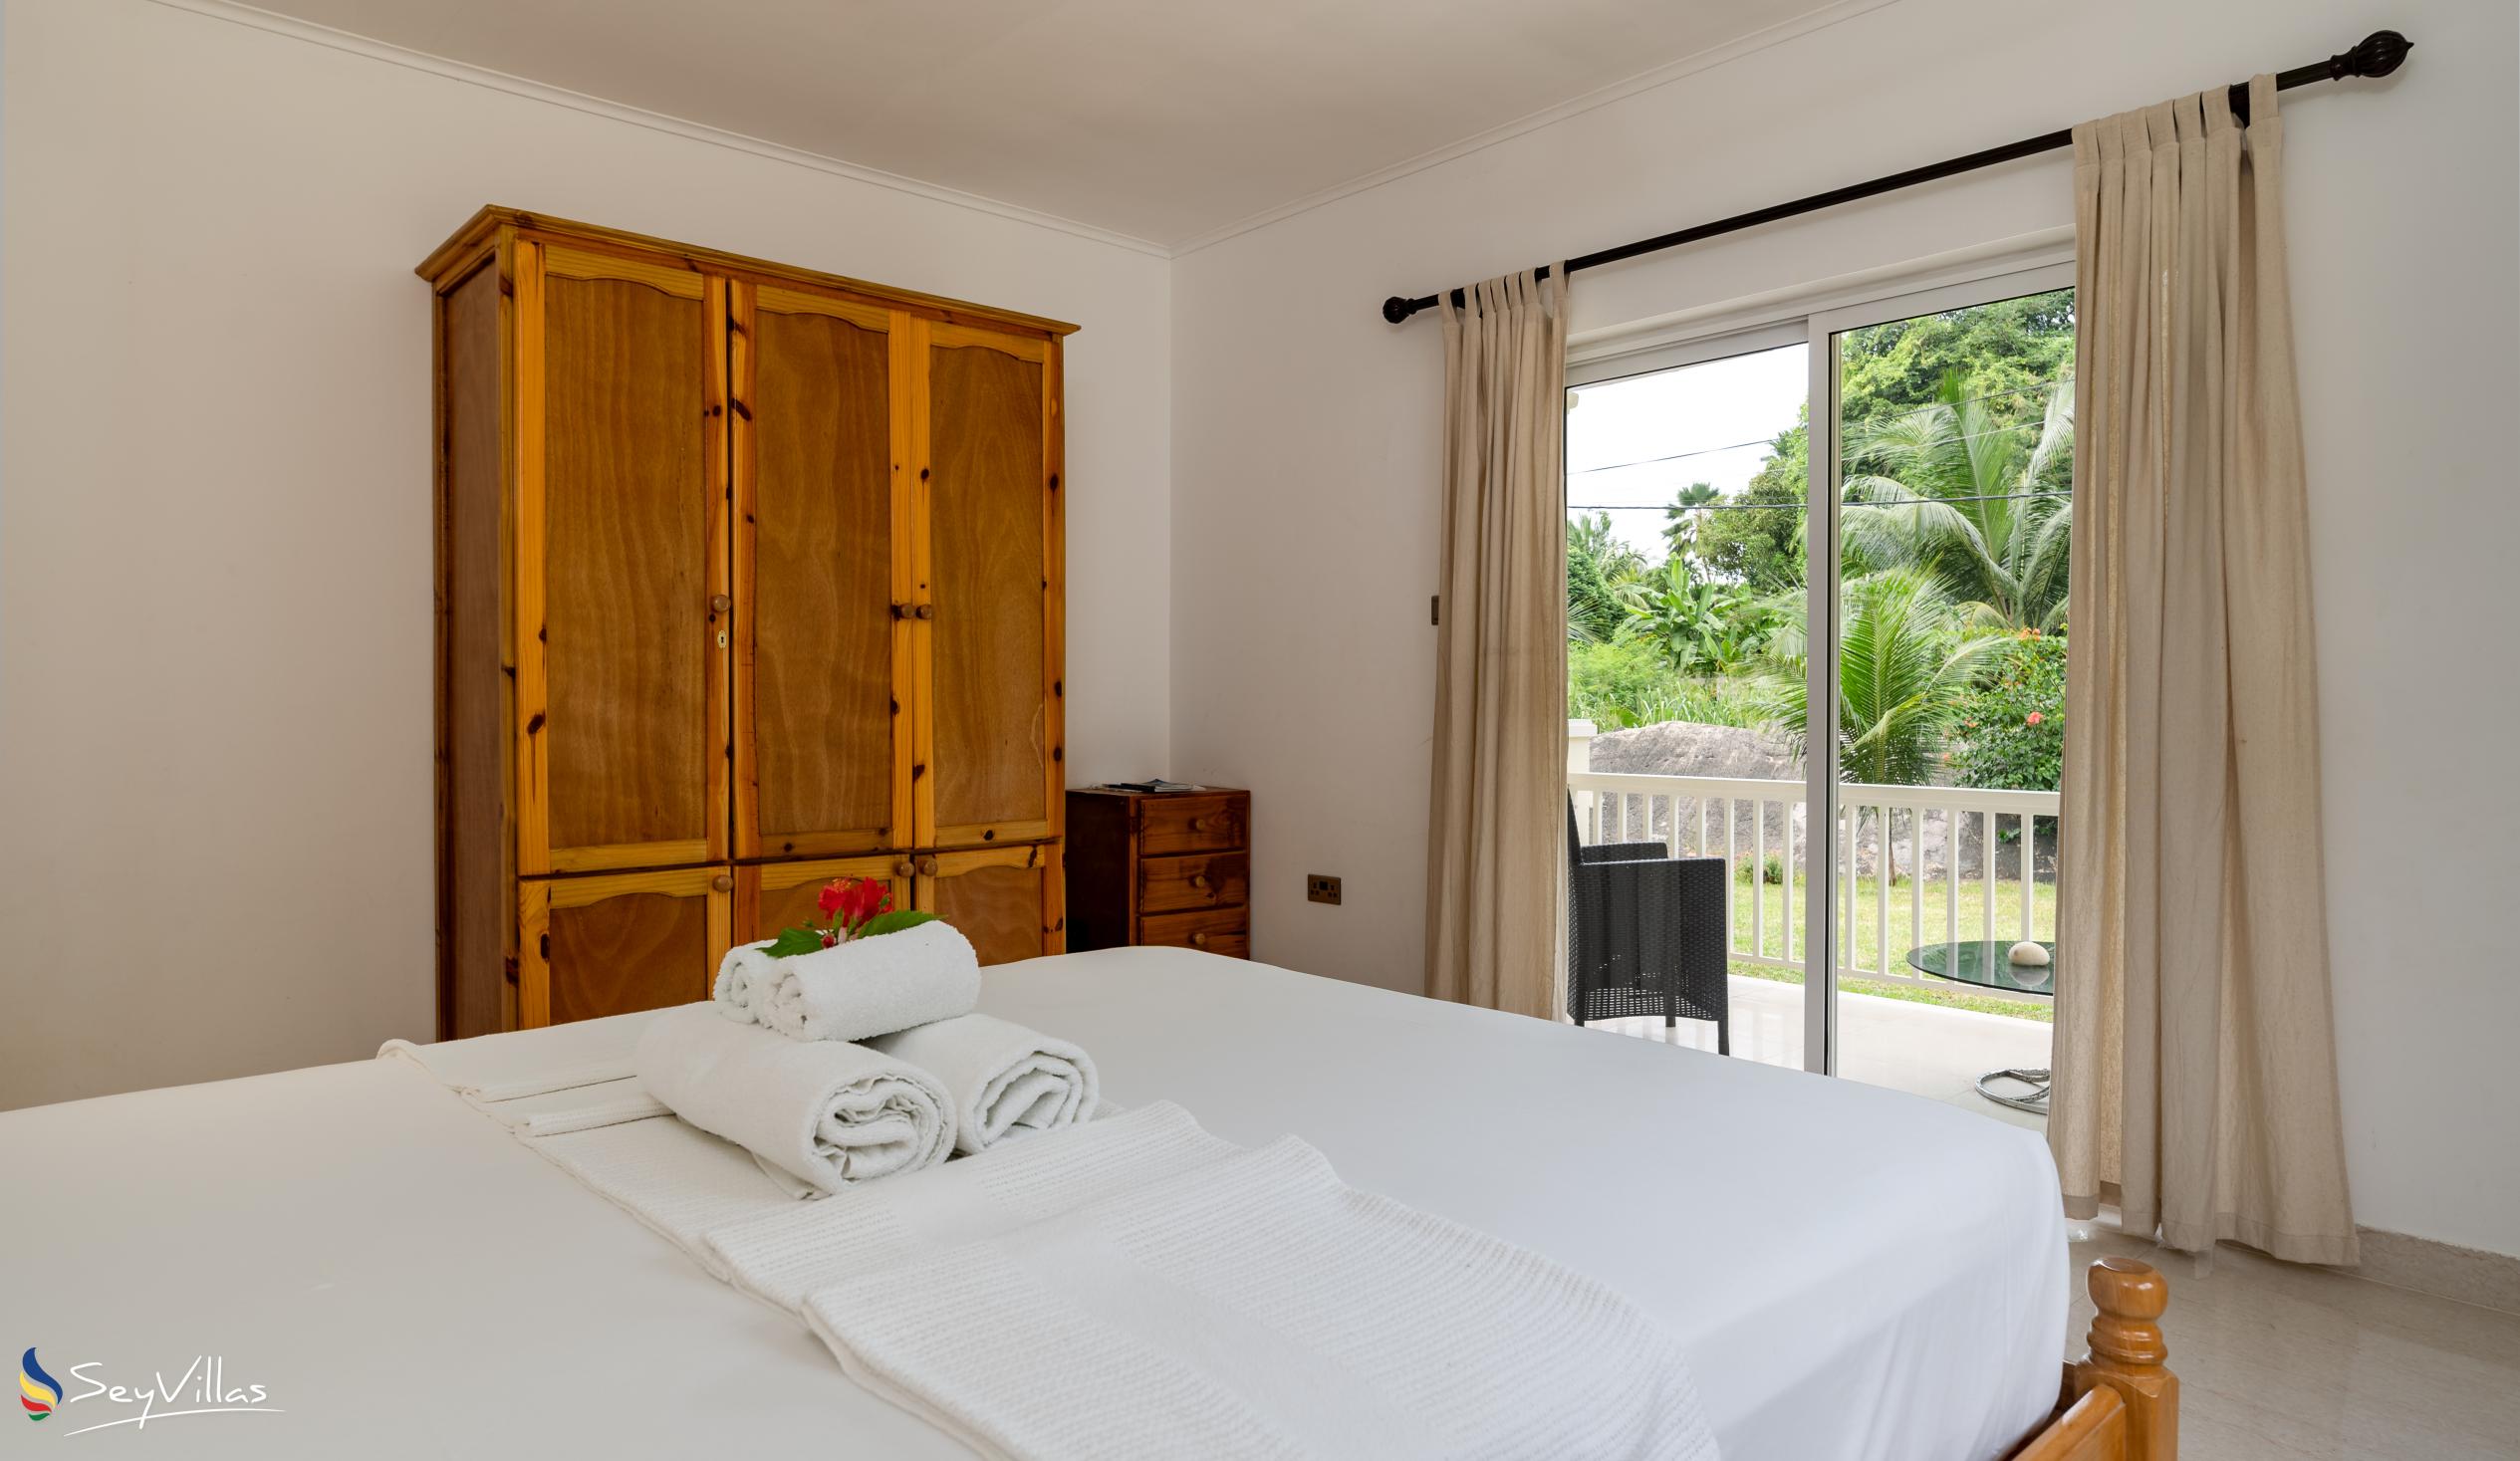 Foto 44: Julie's Holiday Home - Chambre double avec vue sur le jardin - Mahé (Seychelles)